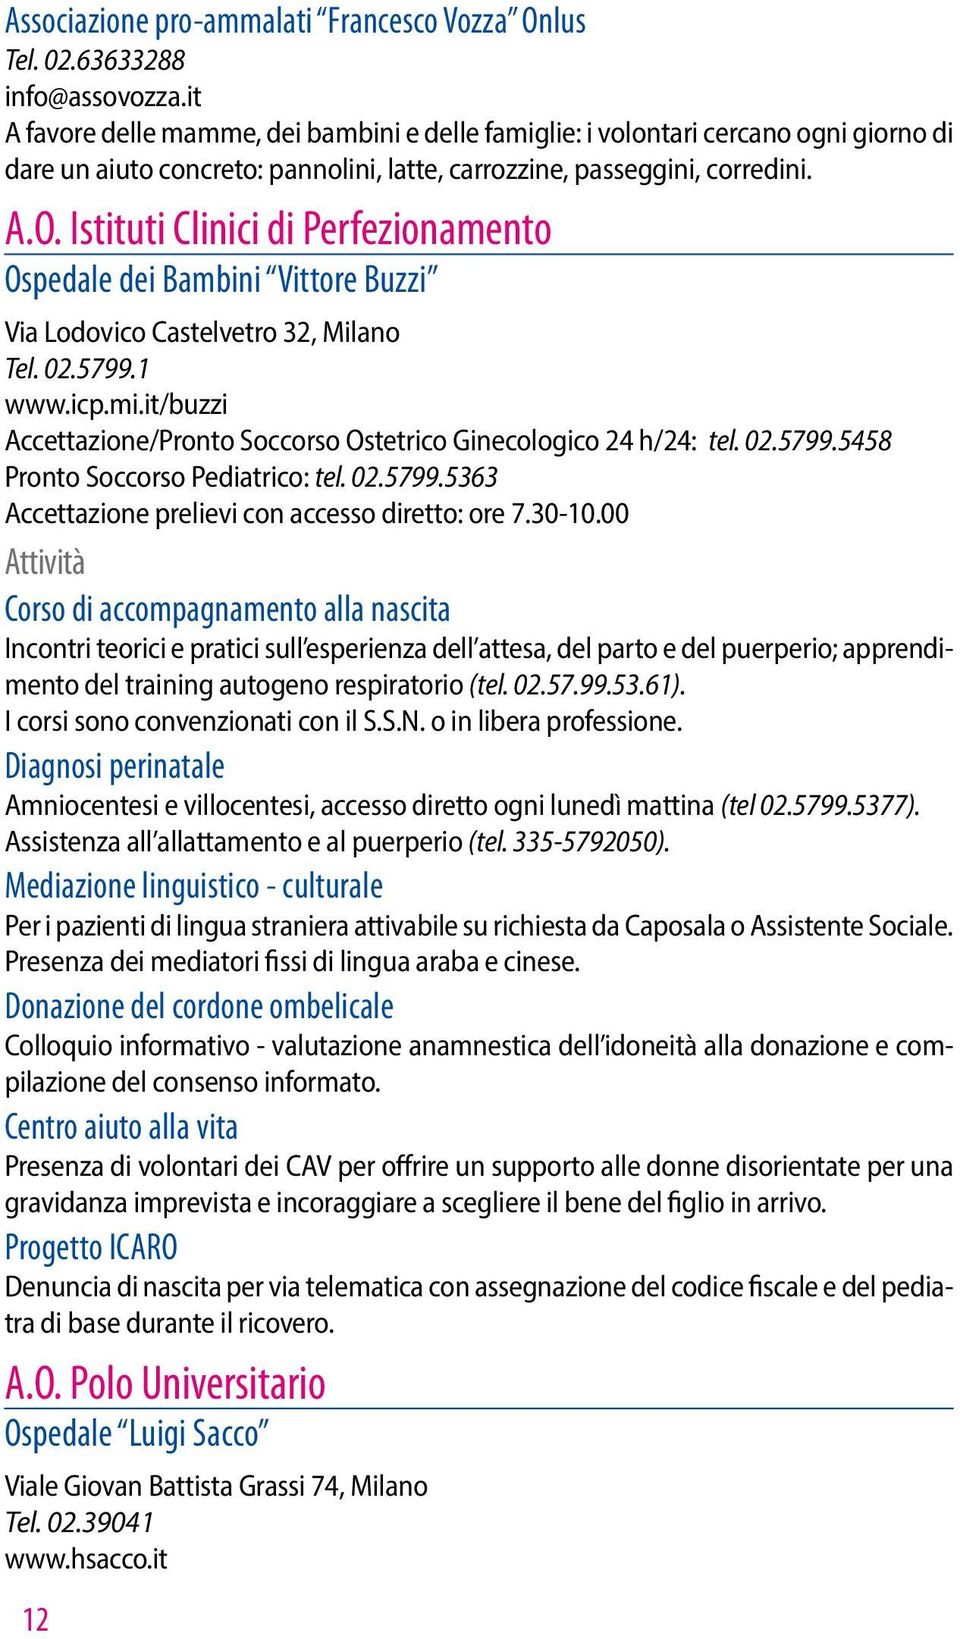 Istituti Clinici di Perfezionamento Ospedale dei Bambini Vittore Buzzi Via Lodovico Castelvetro 32, Milano Tel. 02.5799.1 www.icp.mi.